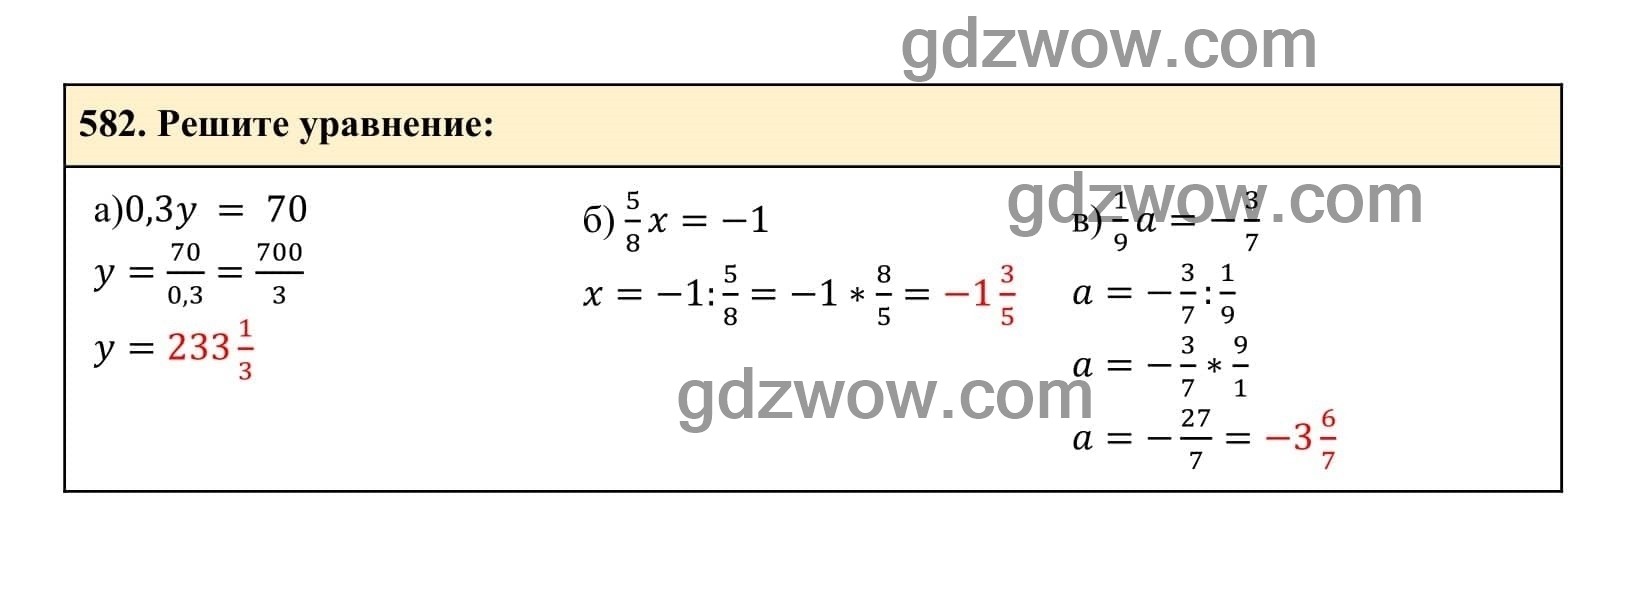 Упражнение 582 - ГДЗ по Алгебре 7 класс Учебник Макарычев (решебник) - GDZwow